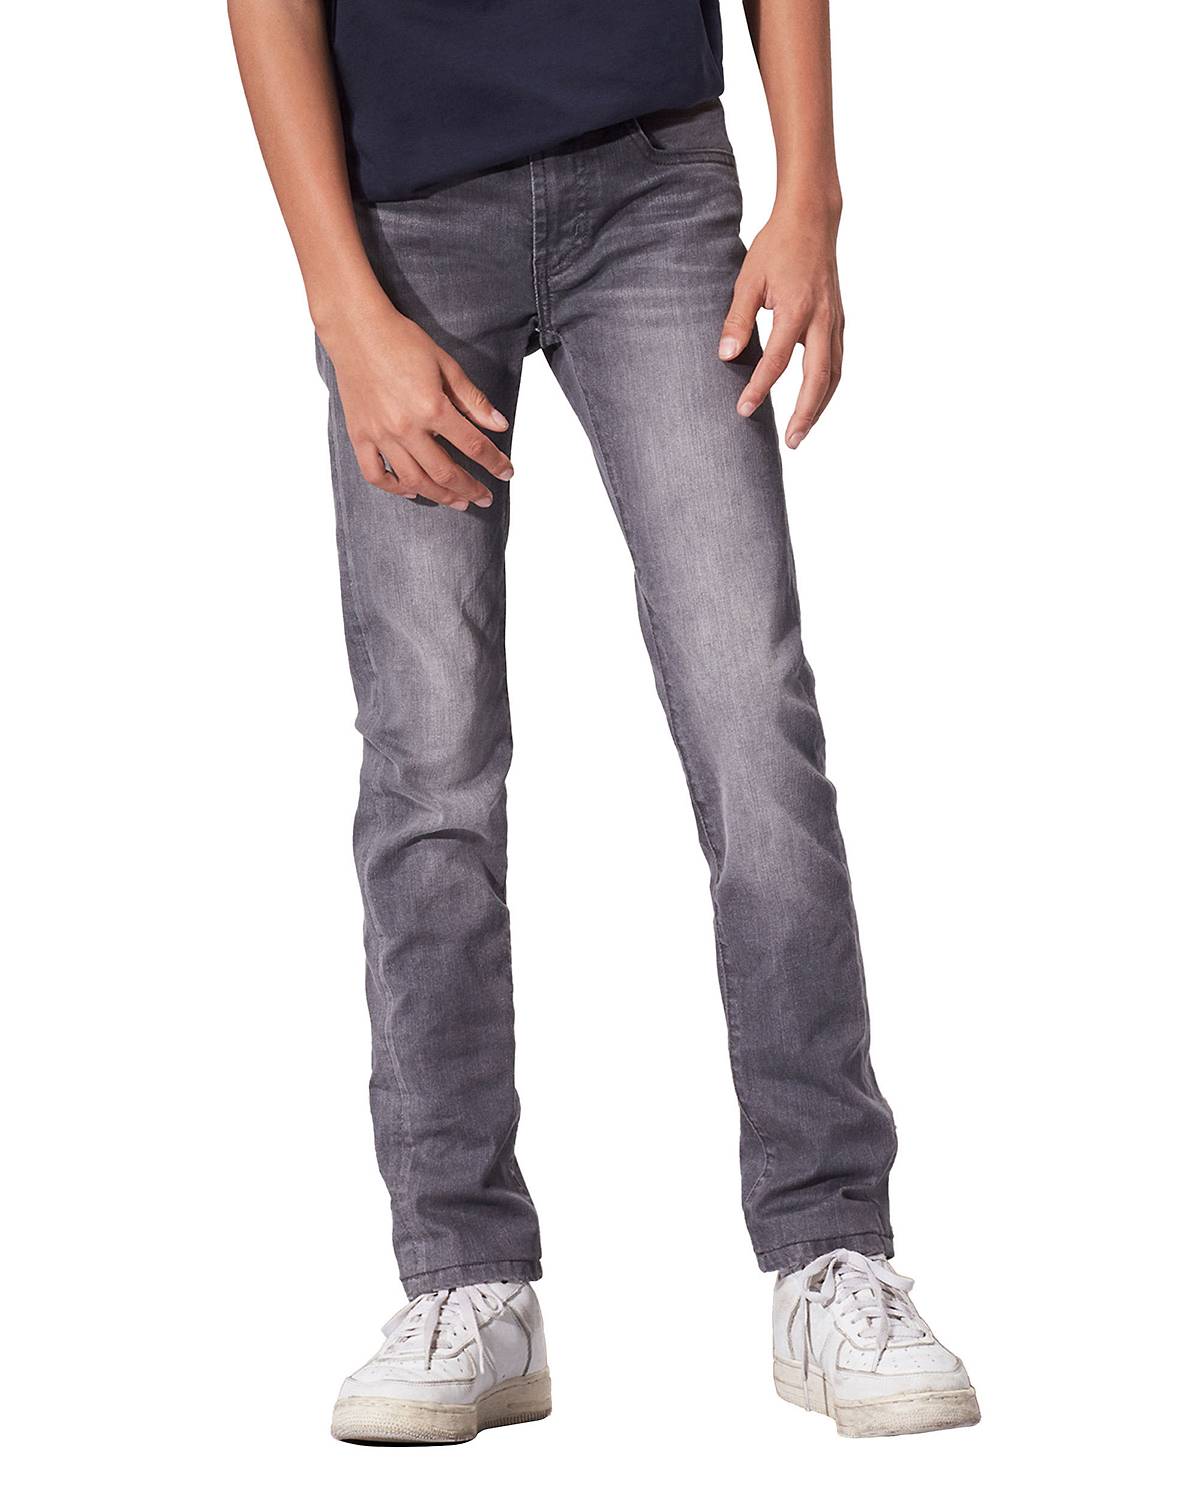 Boy wearing 510™ Skinny Fit Jeans